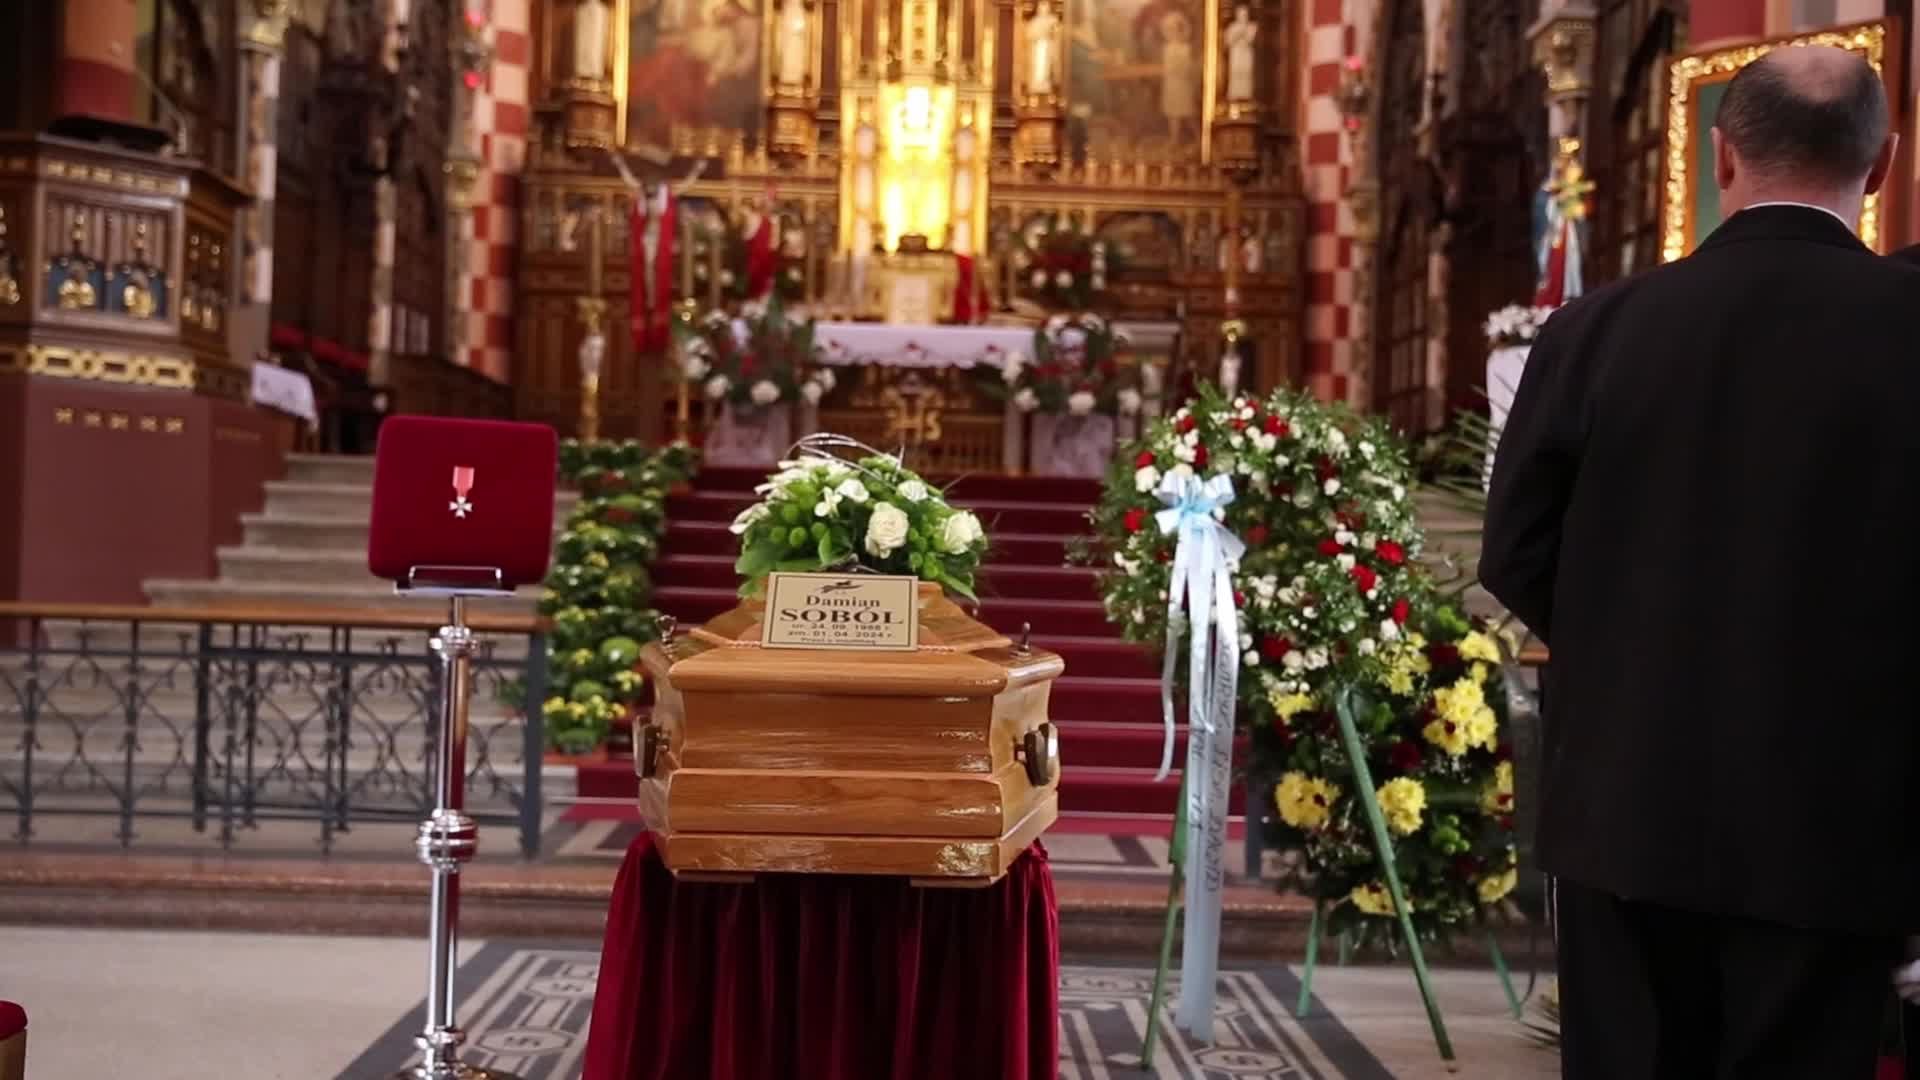 World Centre Kitchen volunteer funeral in Poland